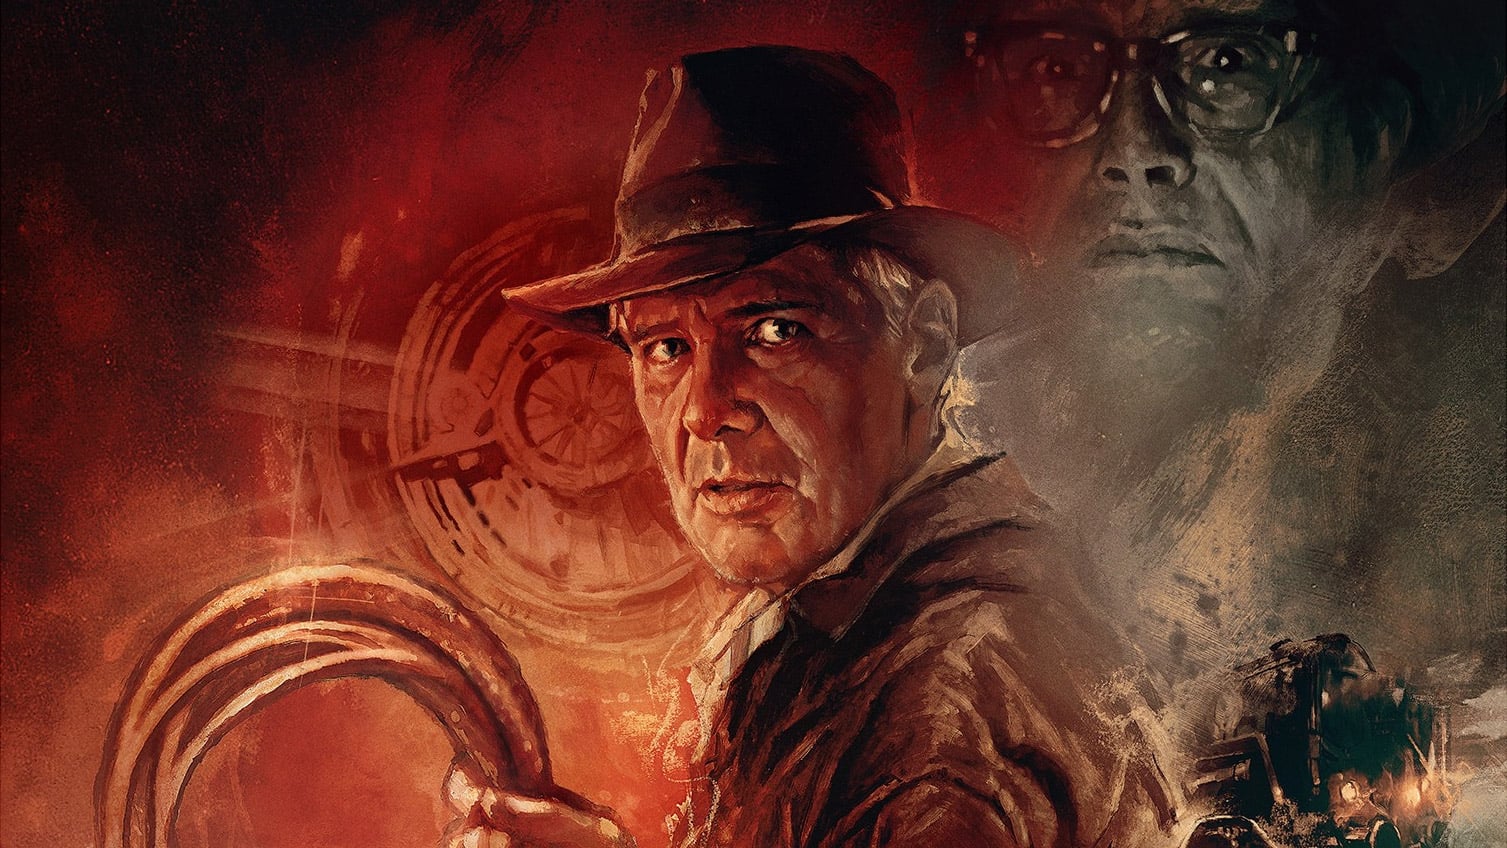 Indiana Jones și cadranul destinului